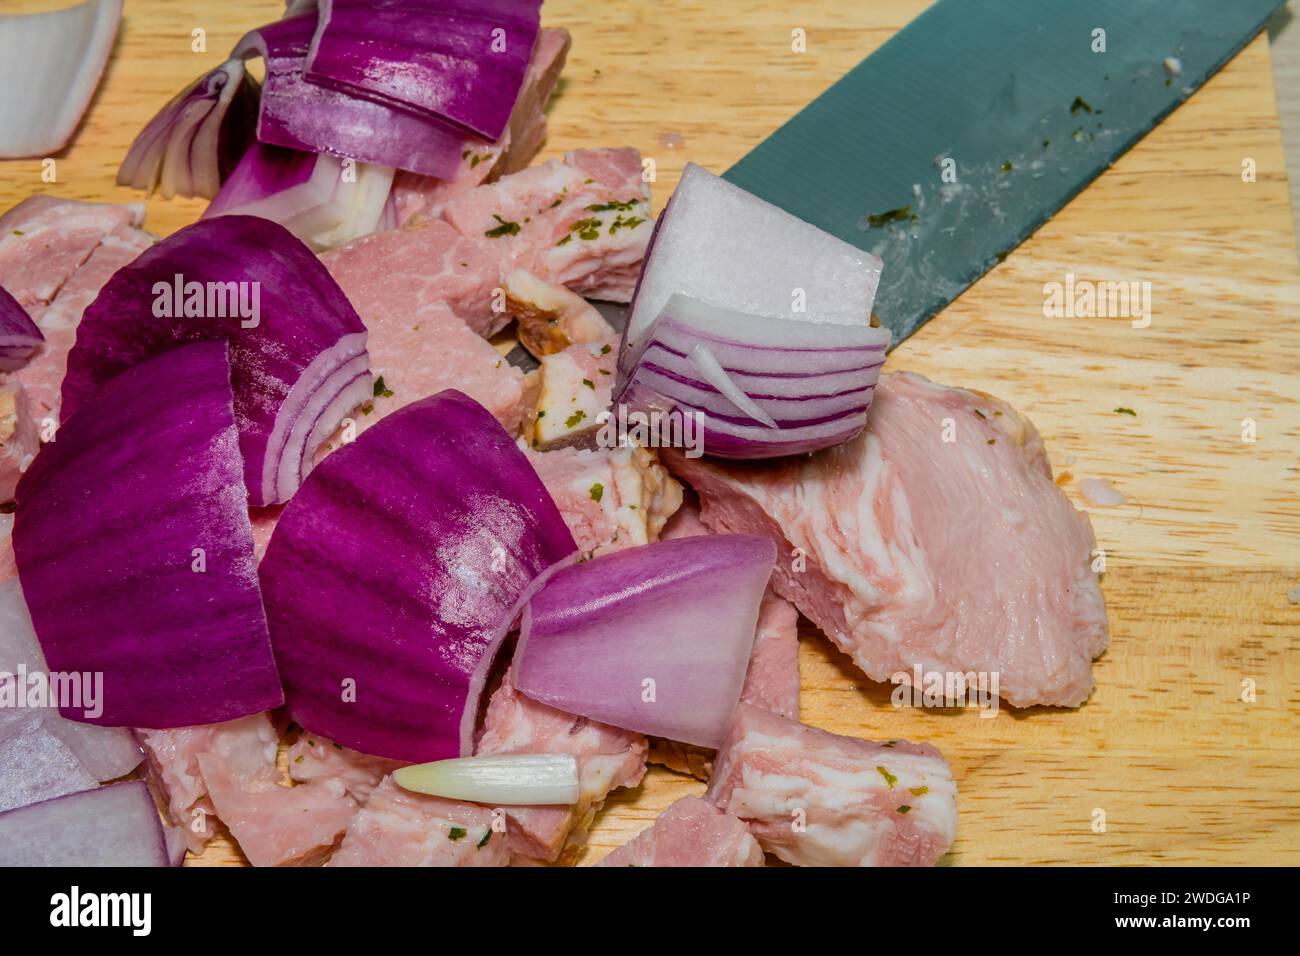 Gros plan des mandrins d'oignon et de jambon posés sur la planche à découper avec le couteau butch sous le jambon Banque D'Images